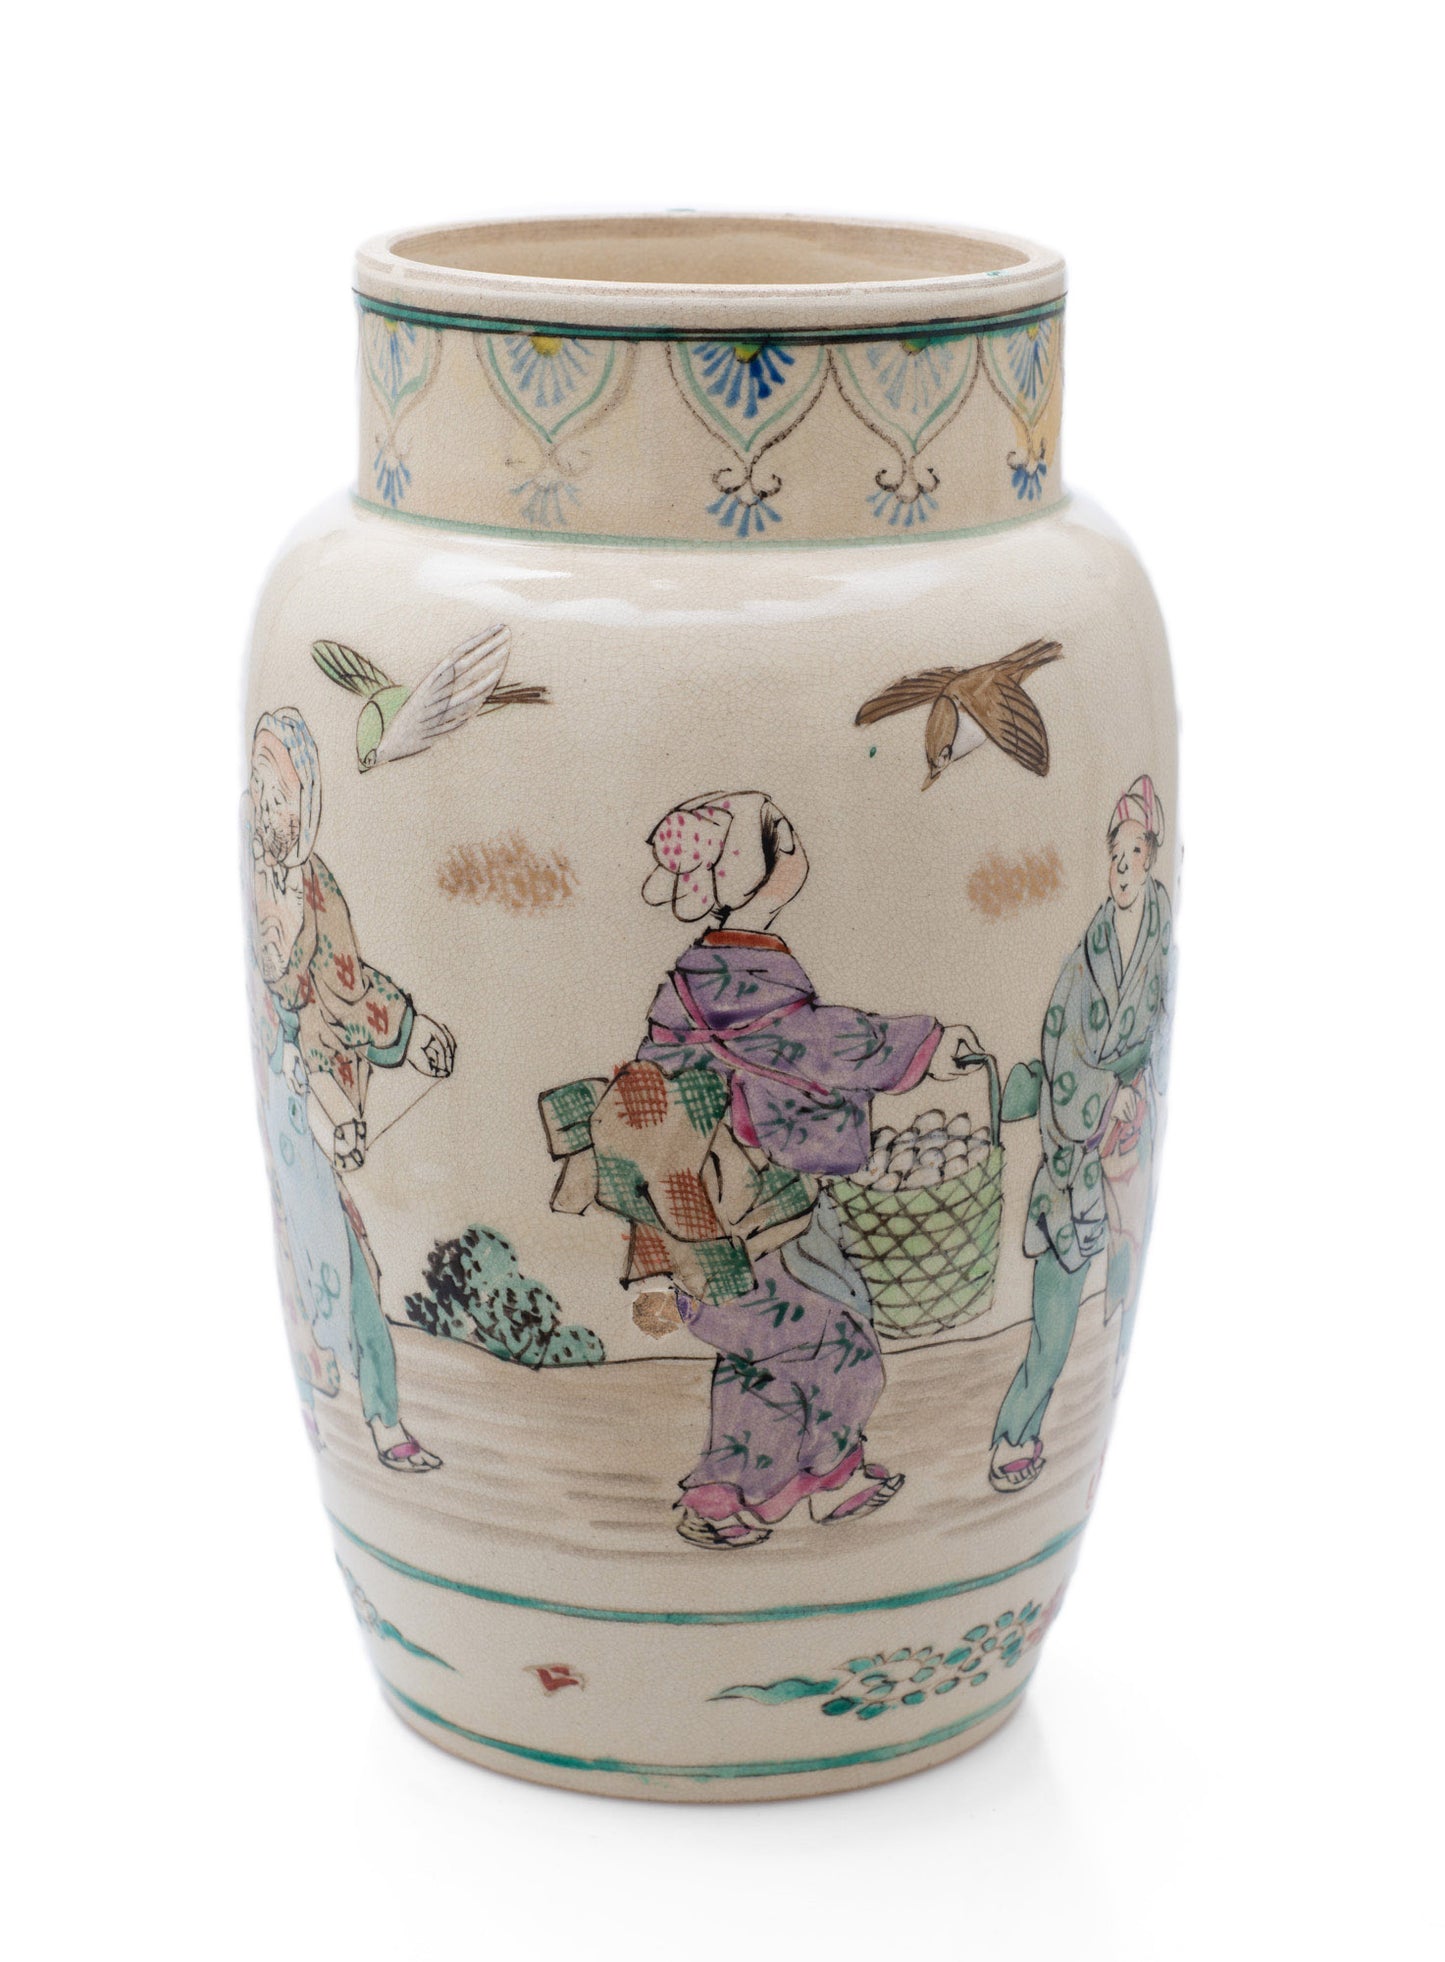 Japanese Satsuma Ware Vase with Large Female Characters & Birds by Yasuda (Code 2488)